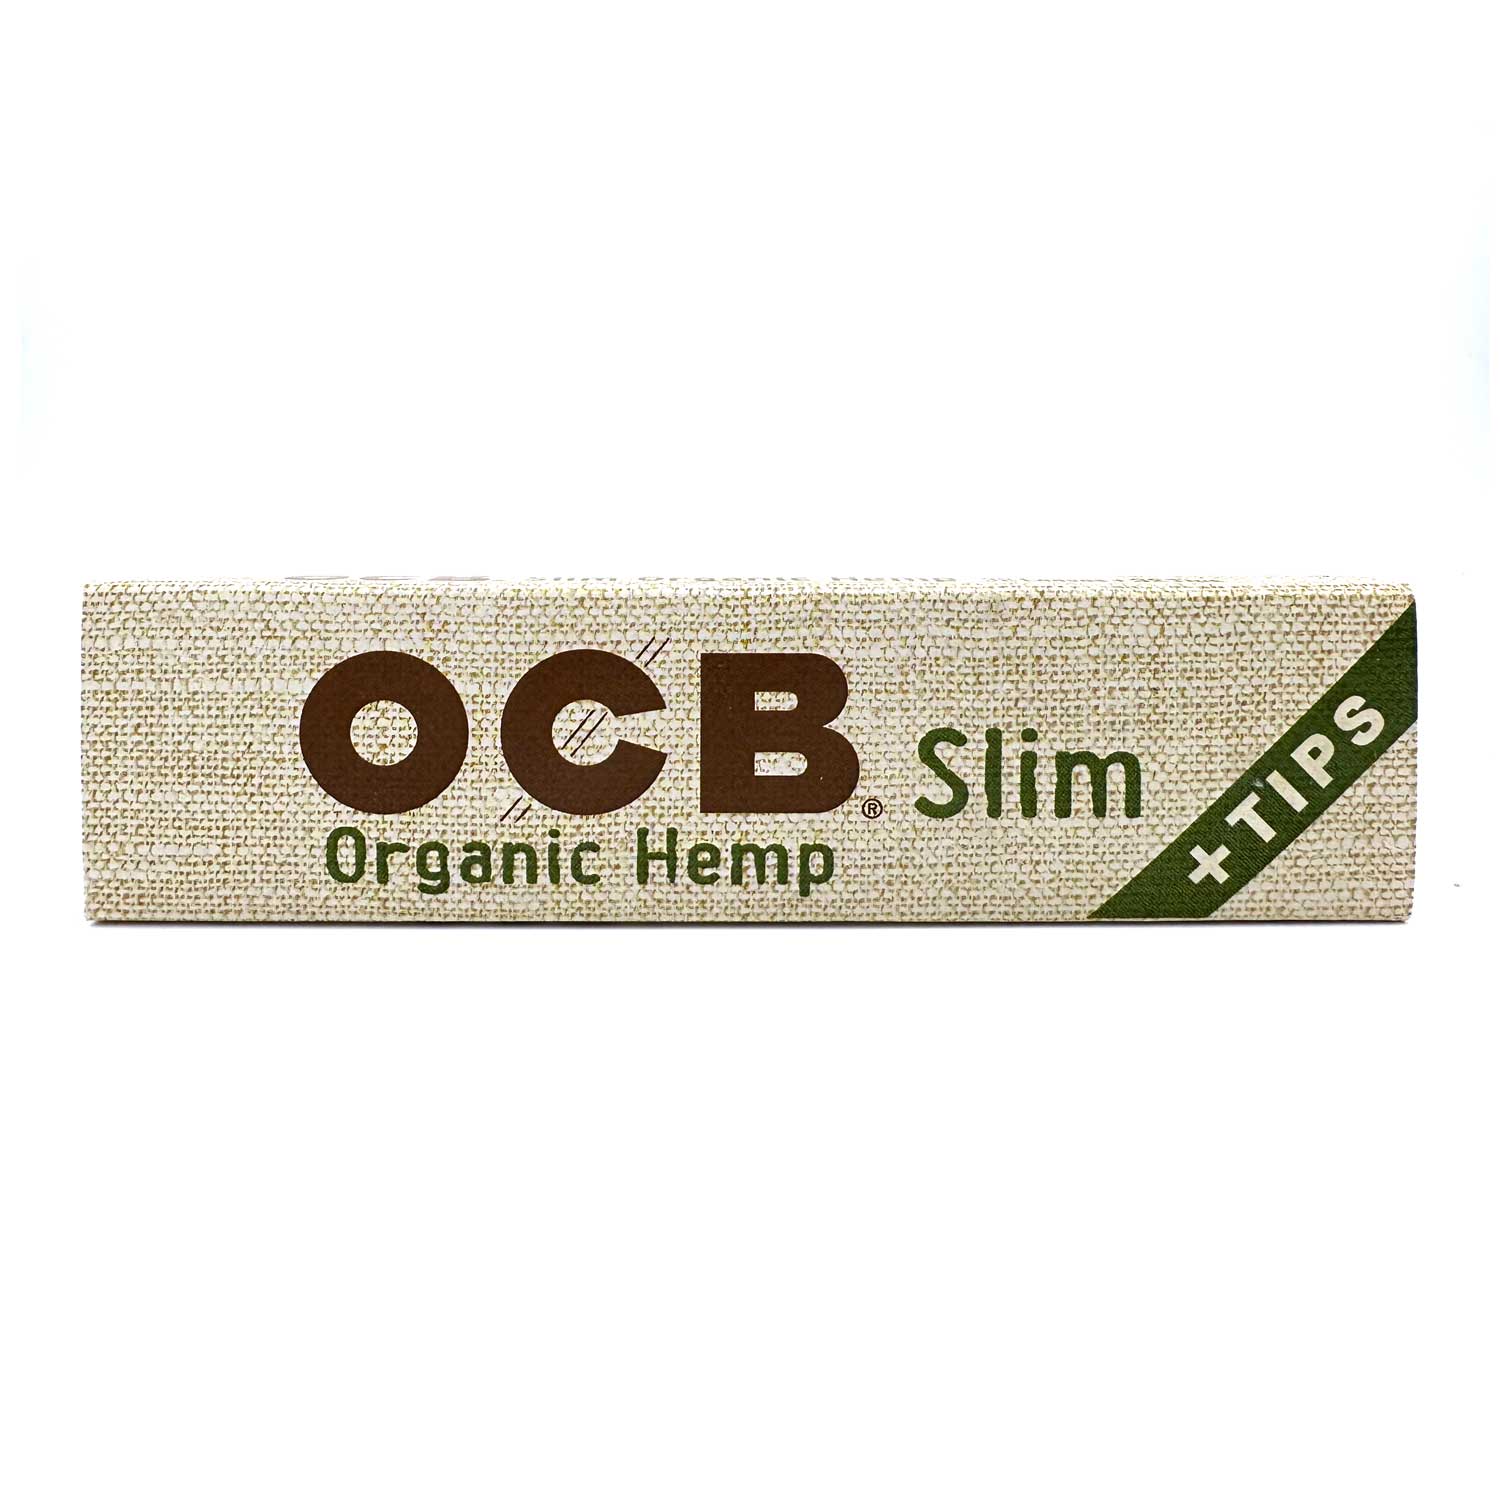 OCB Slim + tips x32